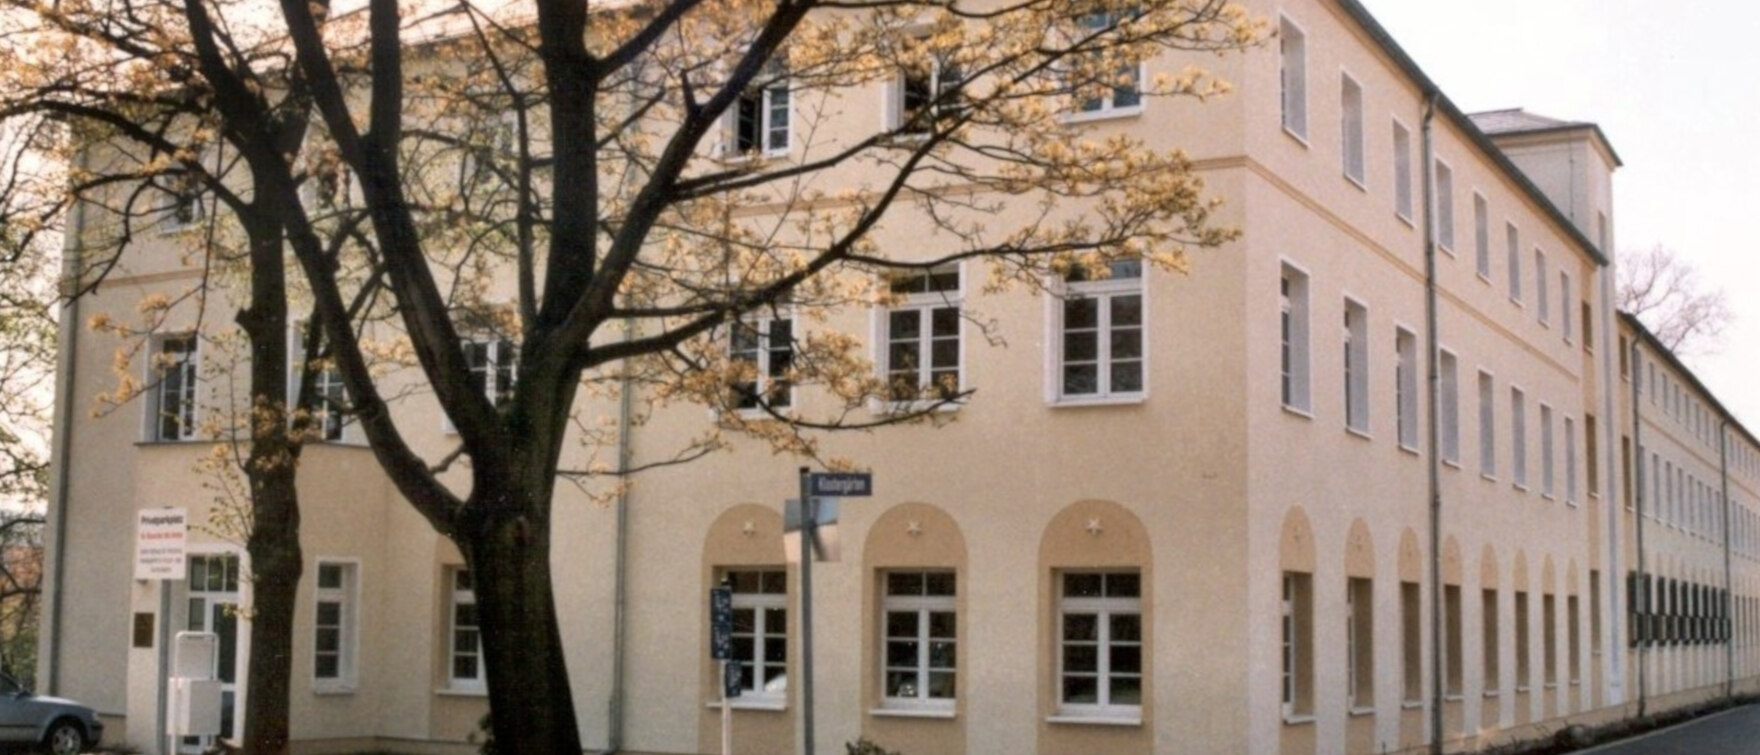 Das Bild zeigt das Dienstgebäude in Döbeln.